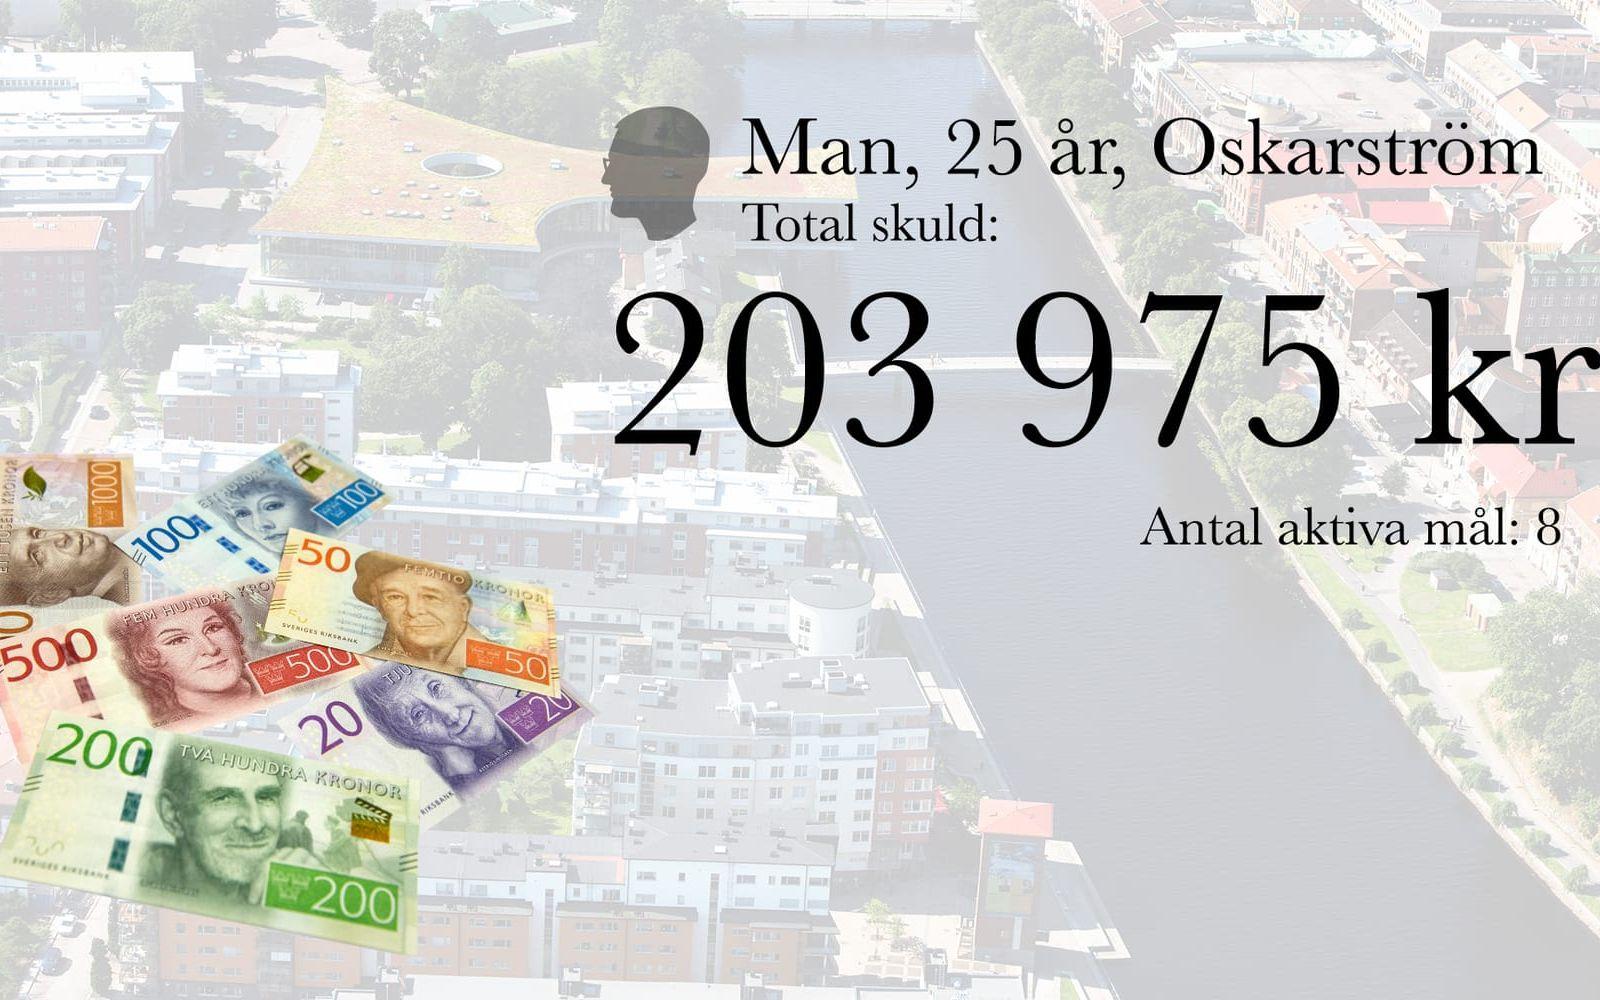 8. Man, 25 år, Oskarström. Total skuld: 203 975 kronor. Antal aktiva mål: 8.
